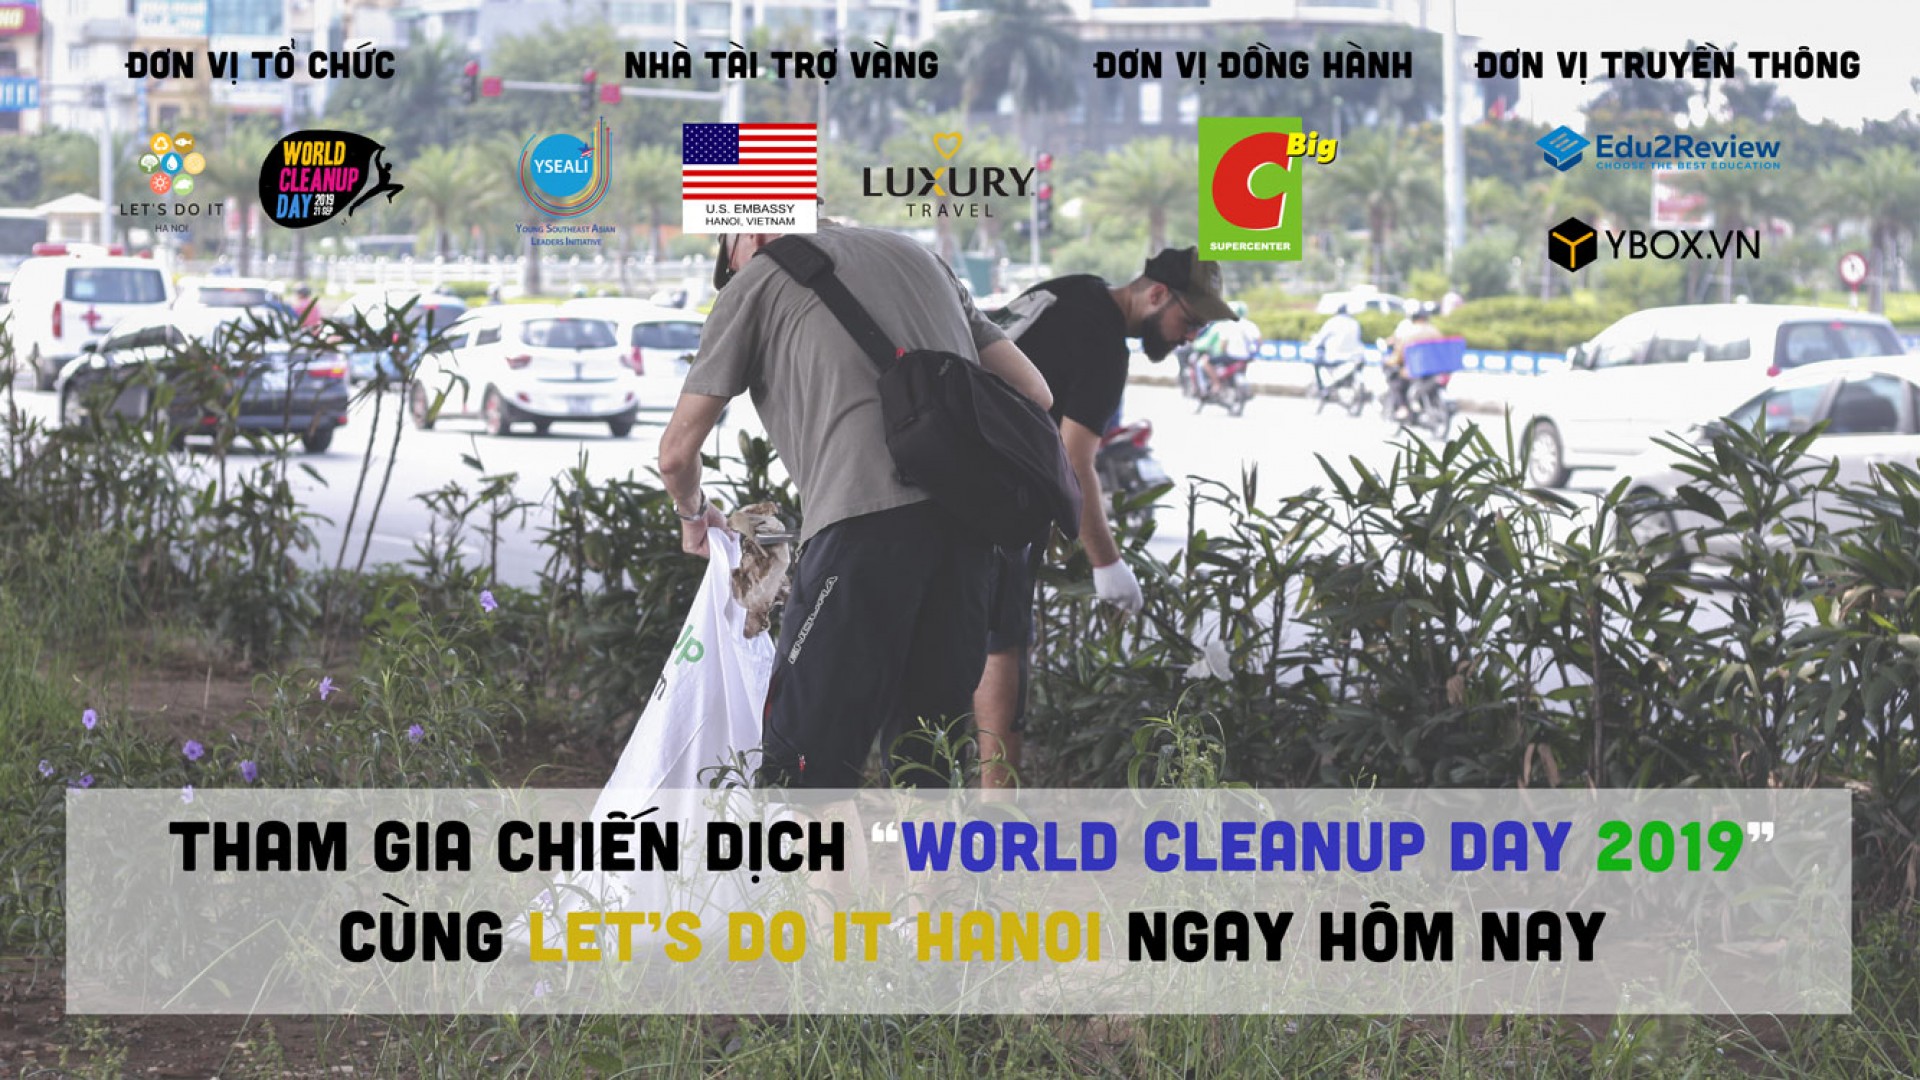 LET’S DO IT! HANOI TUYỂN TÌNH NGUYỆN VIÊN CHO CHIẾN DỊCH WORLD CLEANUP DAY 2019